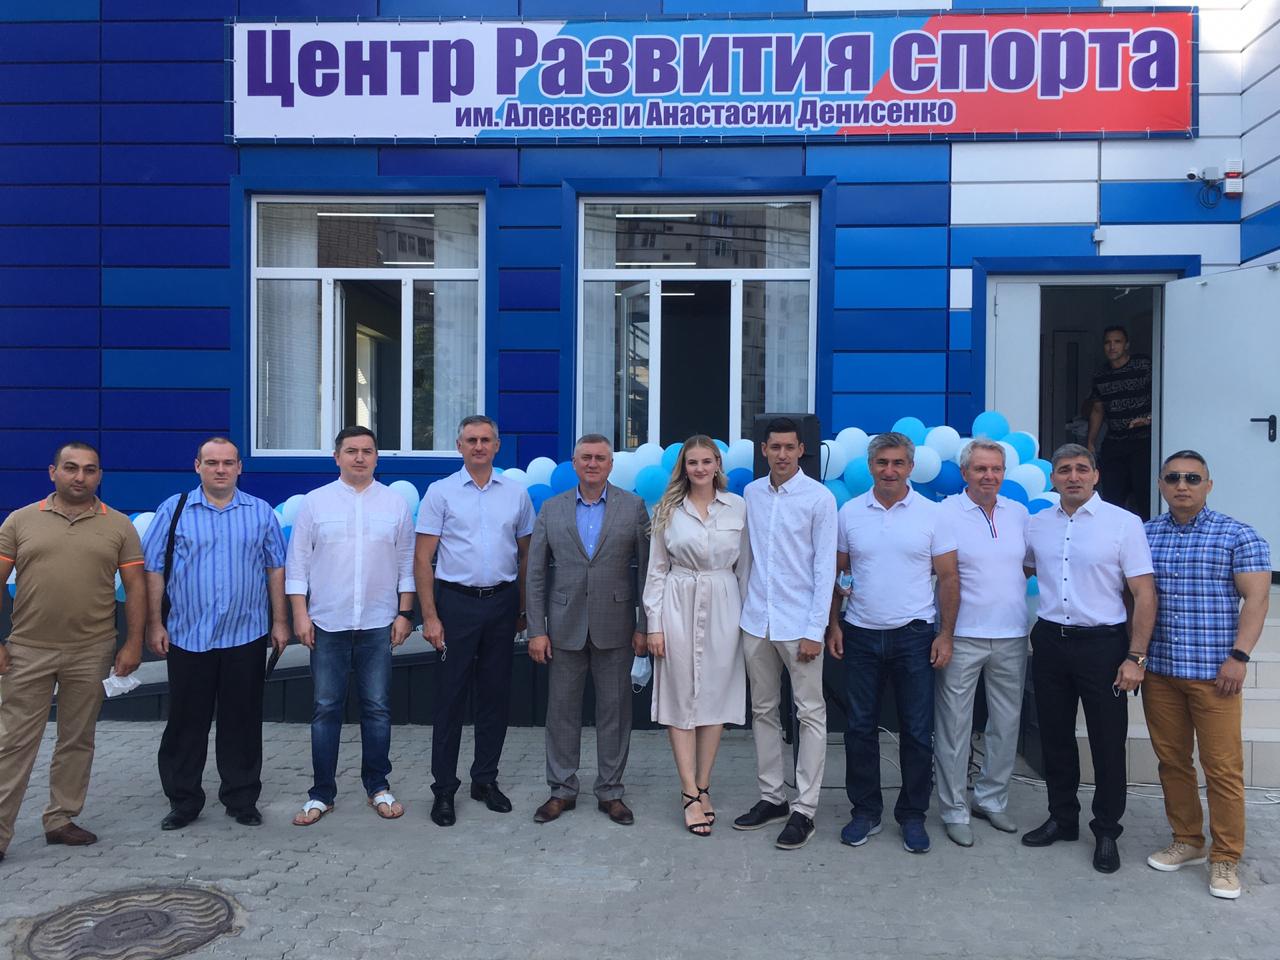 В Батайске открыли Центр развития спорта имени Алексея и Анастасии Денисенко